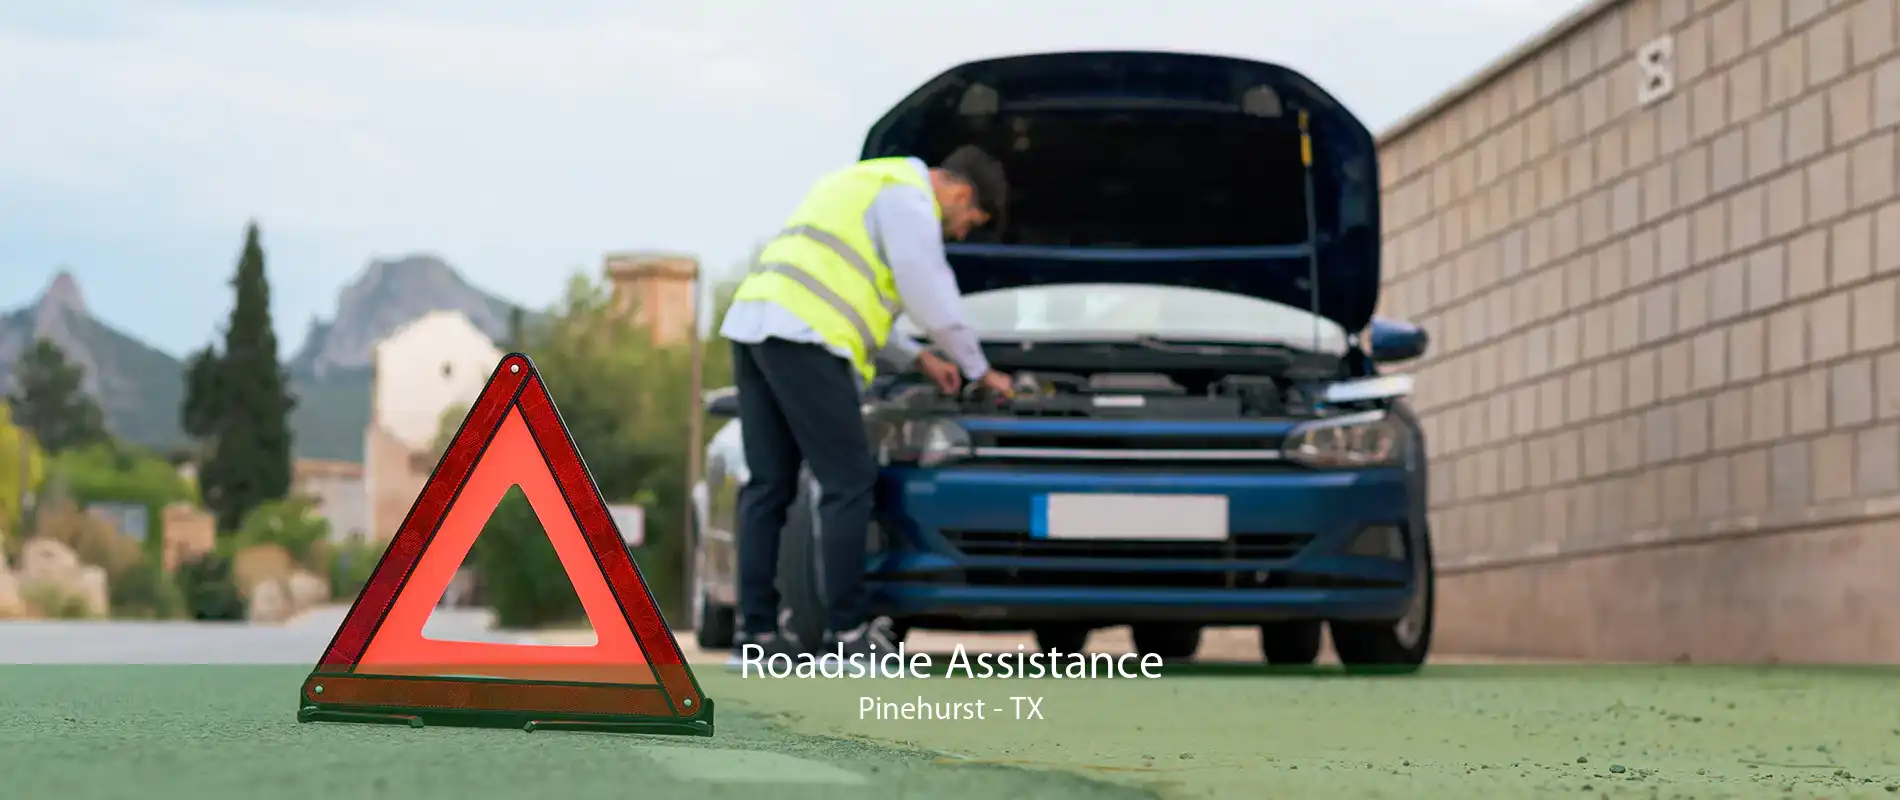 Roadside Assistance Pinehurst - TX